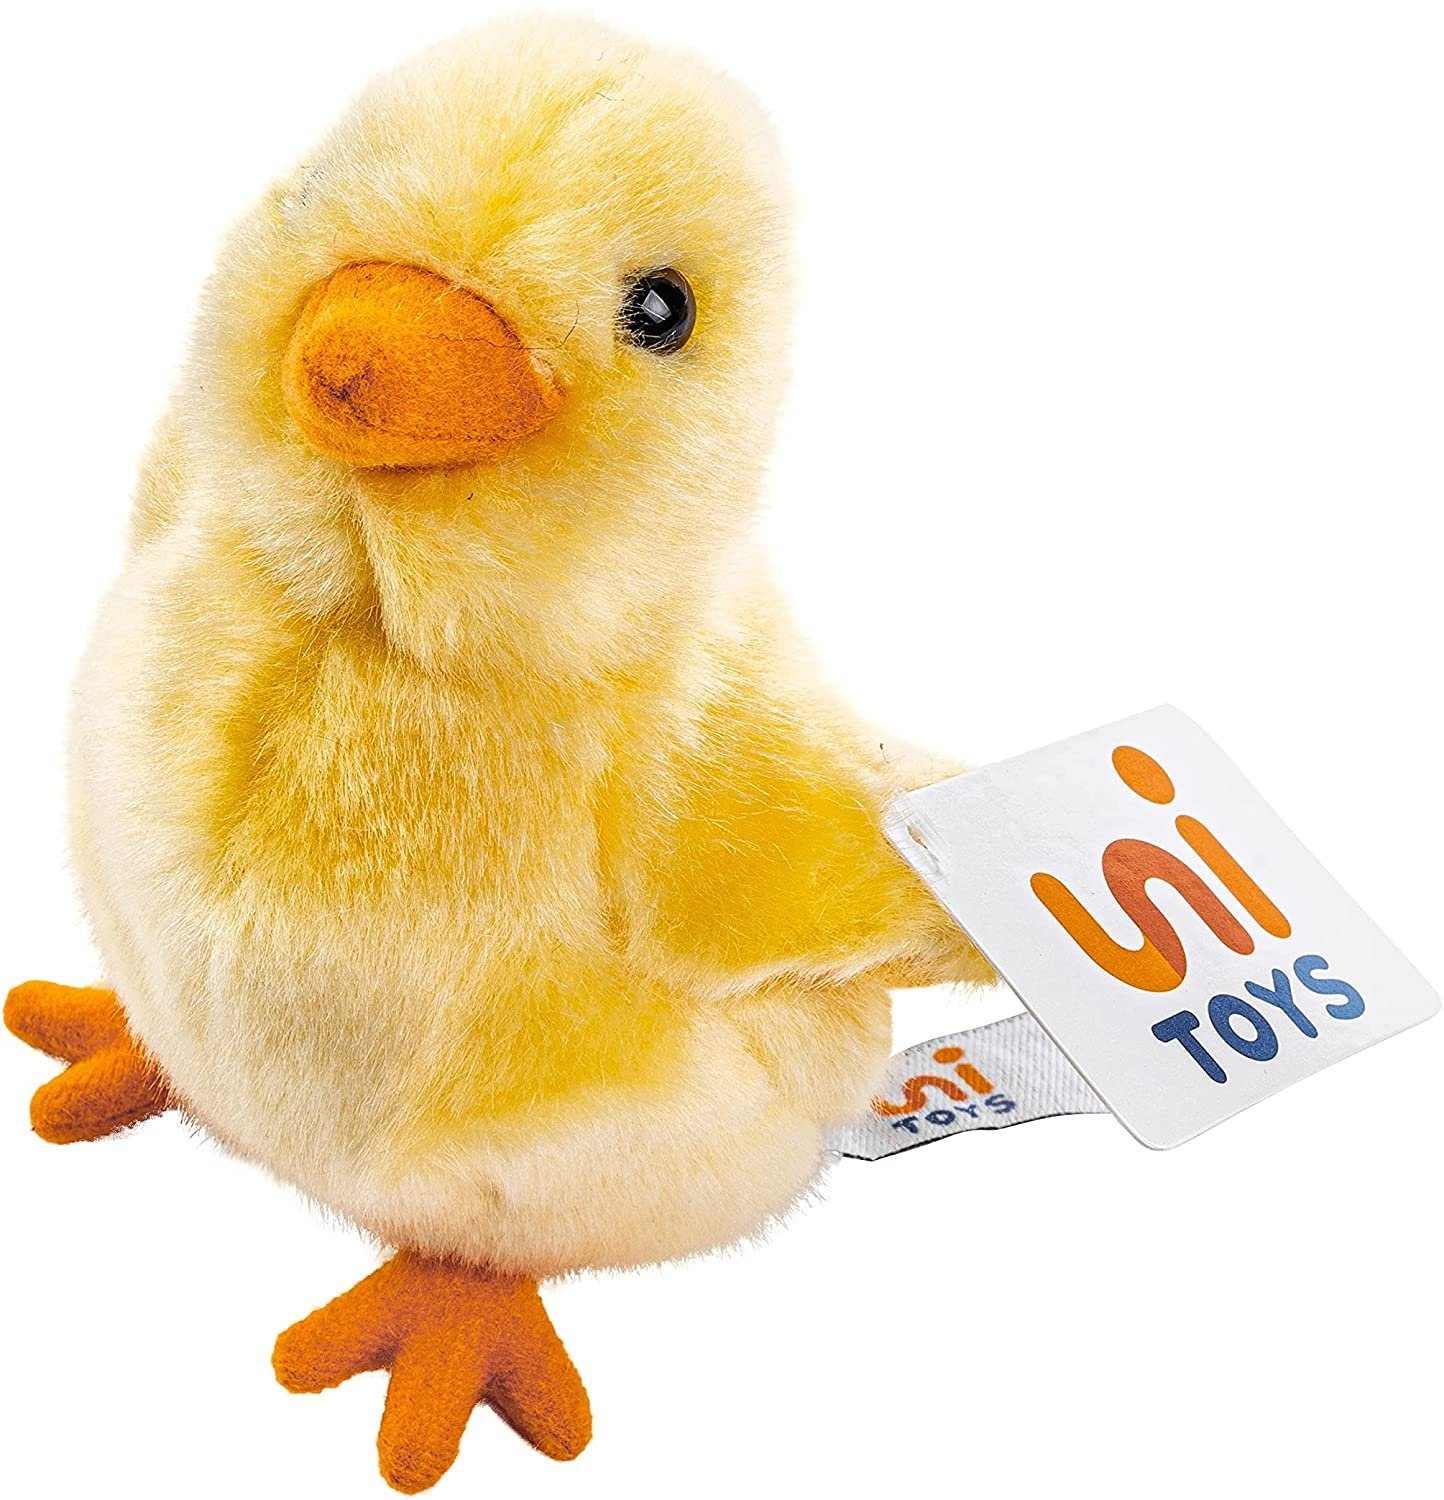 Uni-Toys Kuscheltier Küken gelb - 13 cm (Höhe) - Plüsch-Huhn, Henne, Vogel - Plüschtier, zu 100 % recyceltes Füllmaterial | Kuscheltiere